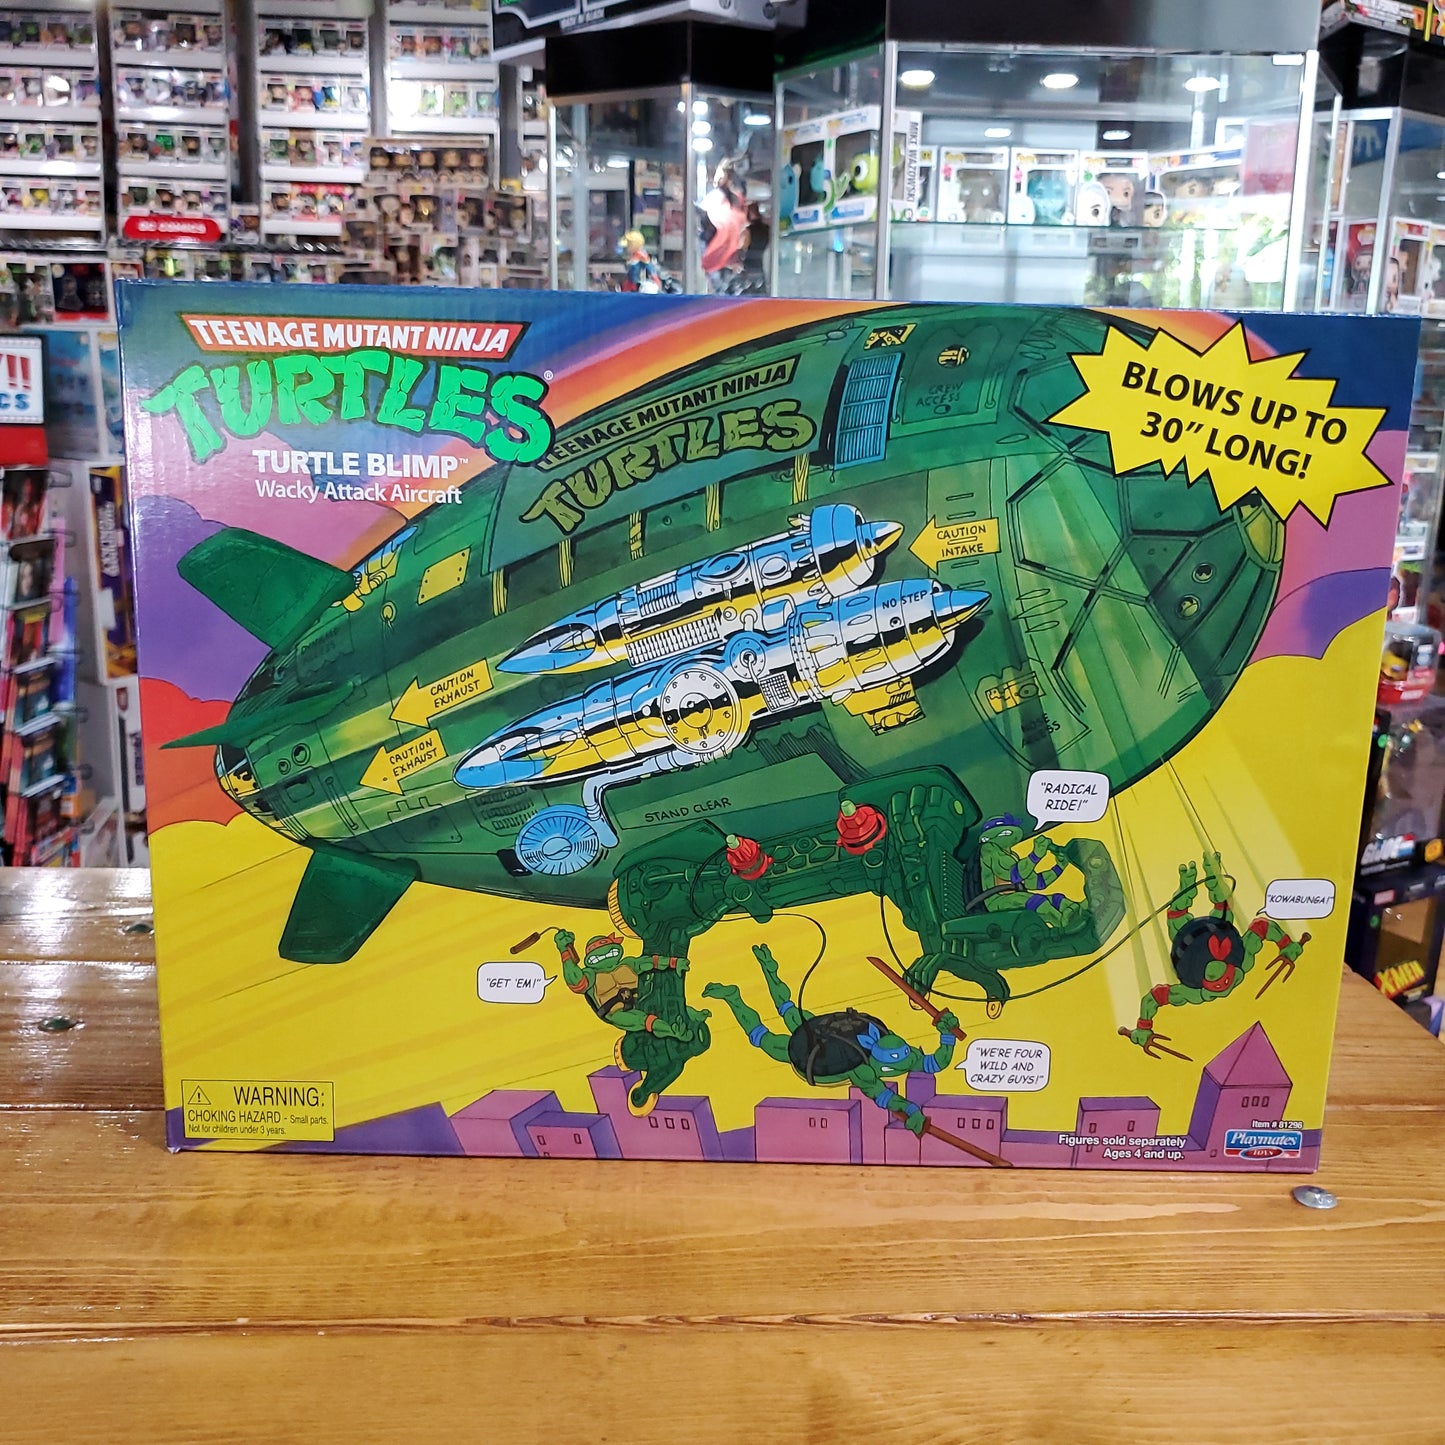 Teenage Mutant Ninja Turtles - Turtle Blimp by Playmates